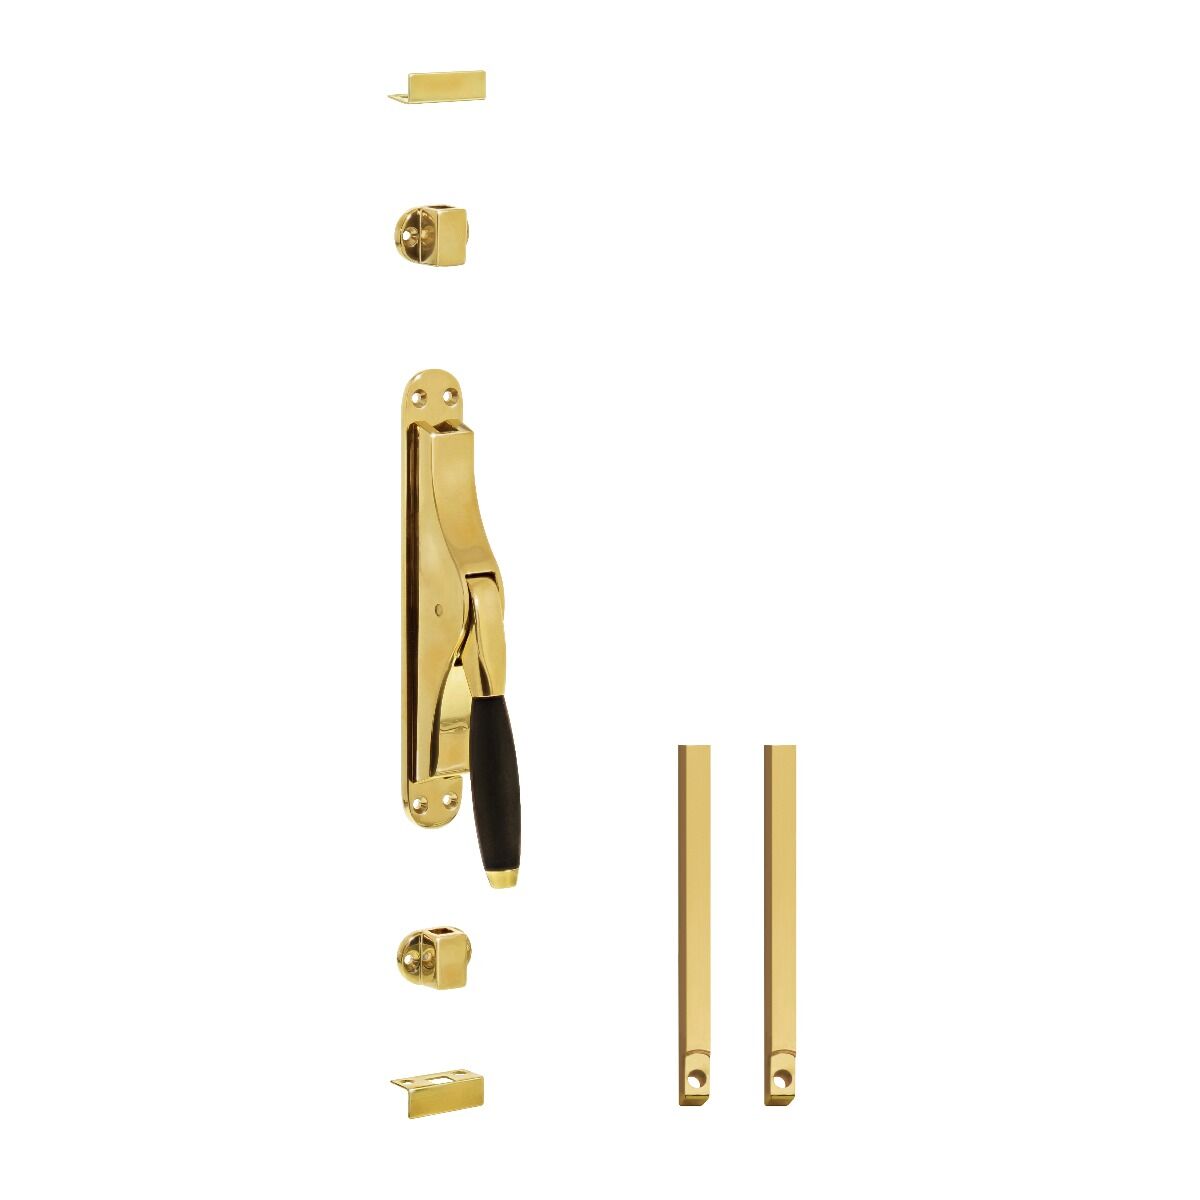 Intersteel-espagnolette-brass-lacquered_0010.562038